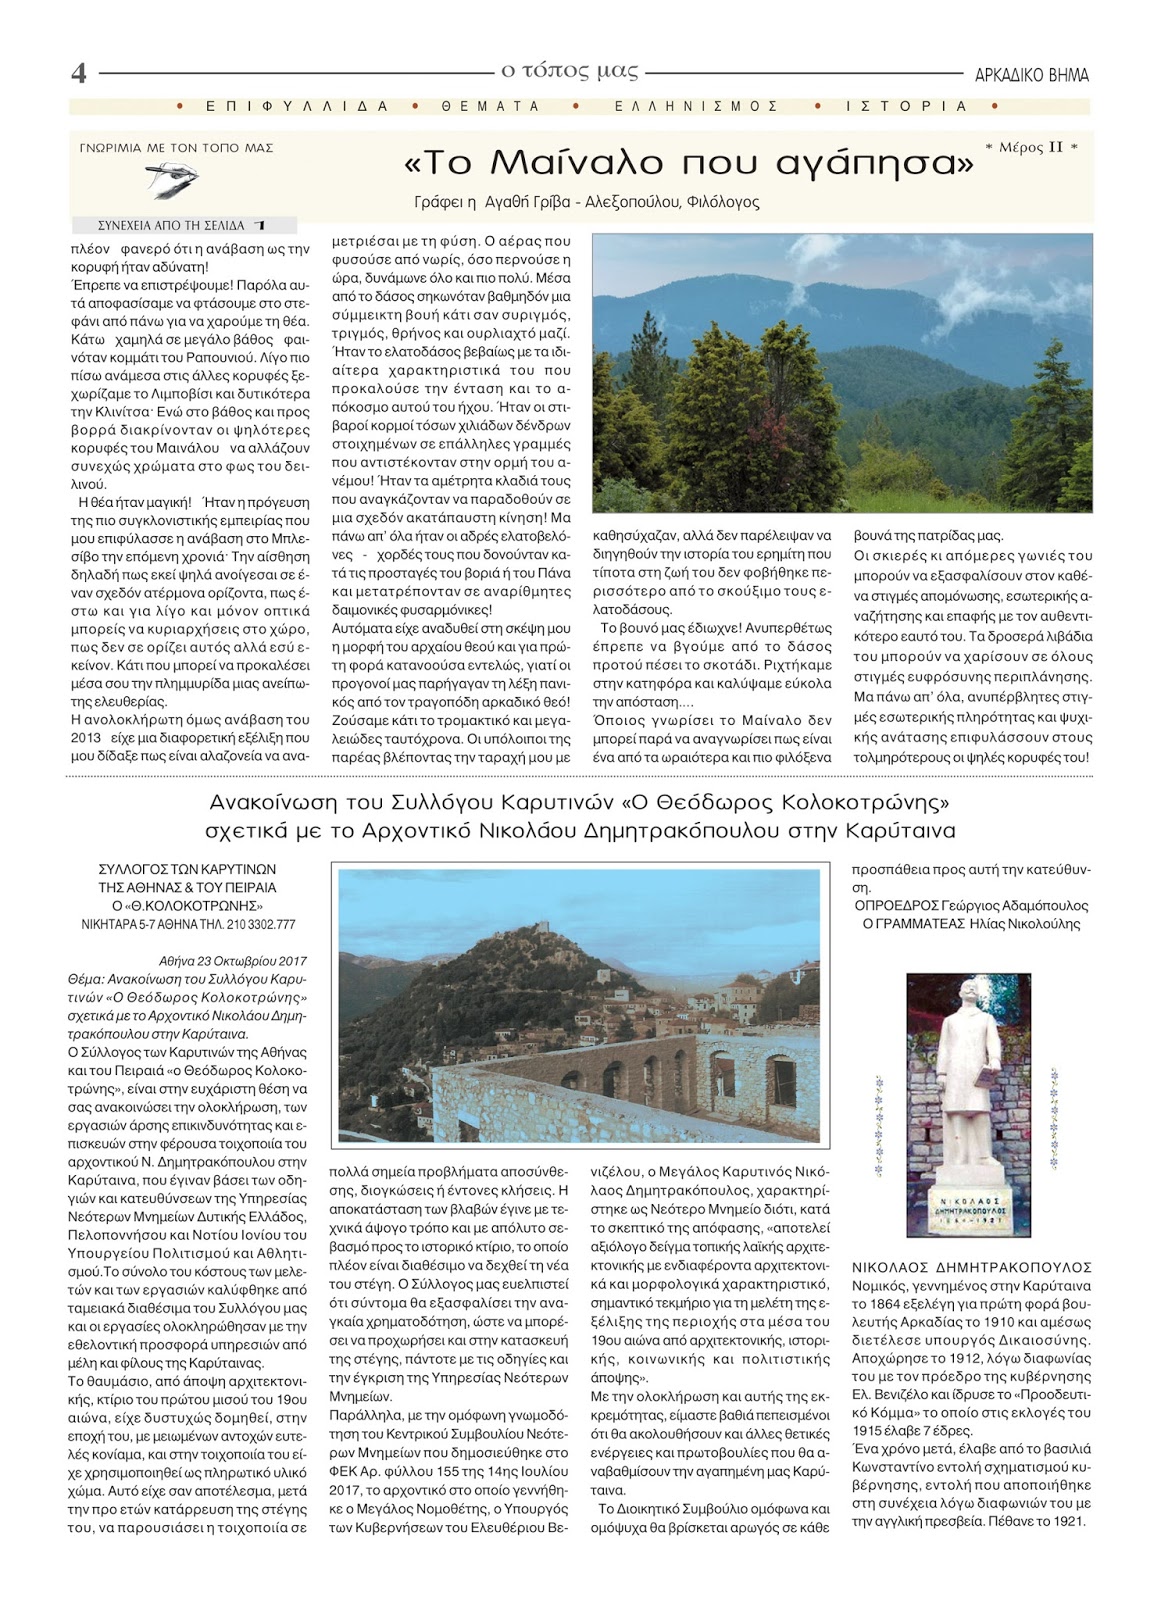 Ανακοίνωση του Συλλόγου Καρυτινών "Το Αρχοντικό Νικ. Δημητρακόπουλου στην Καρύταινα"